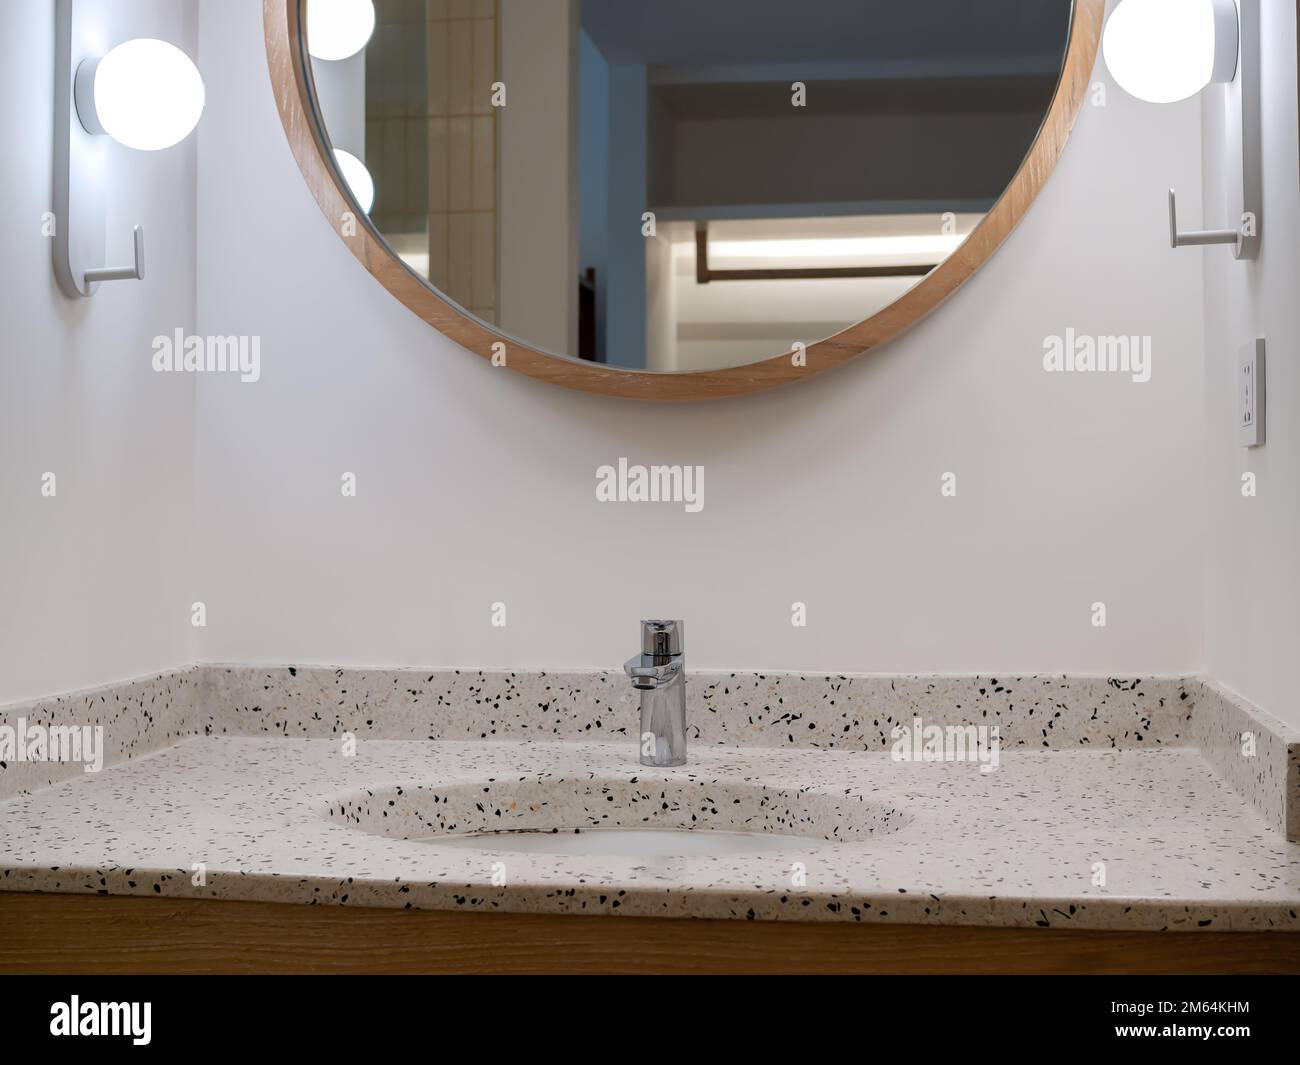 Armatur oder Wasserhahn aus rostfreiem Chrom-Silber in runder Form von Terrazzo-Fliesen Waschbeckendekoration mit rundem Spiegel und Lampen auf weißem Wandschrank Stockfoto